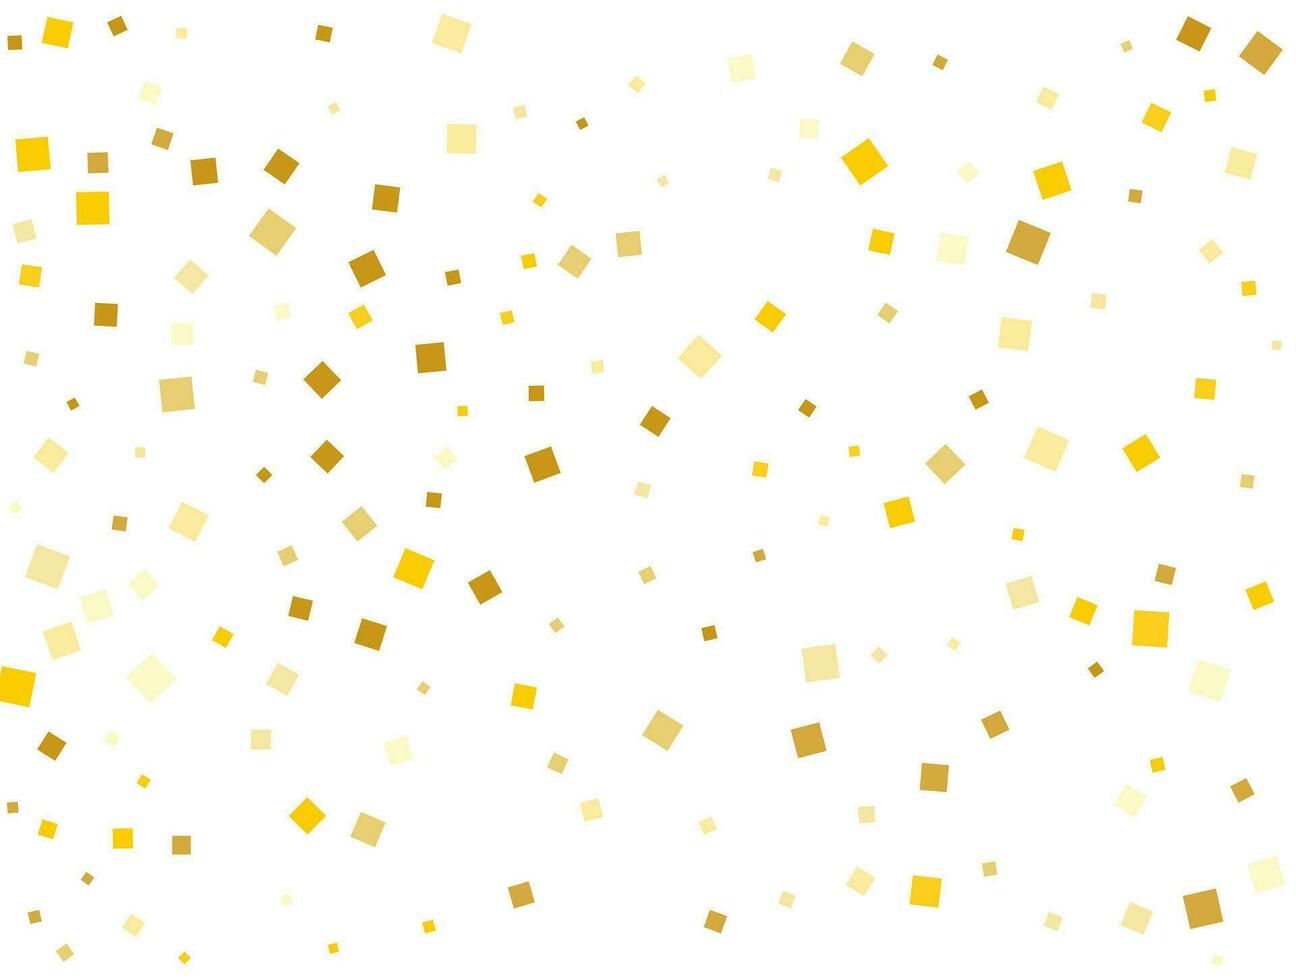 Golden Rain From Square Confetti. Vector illustration